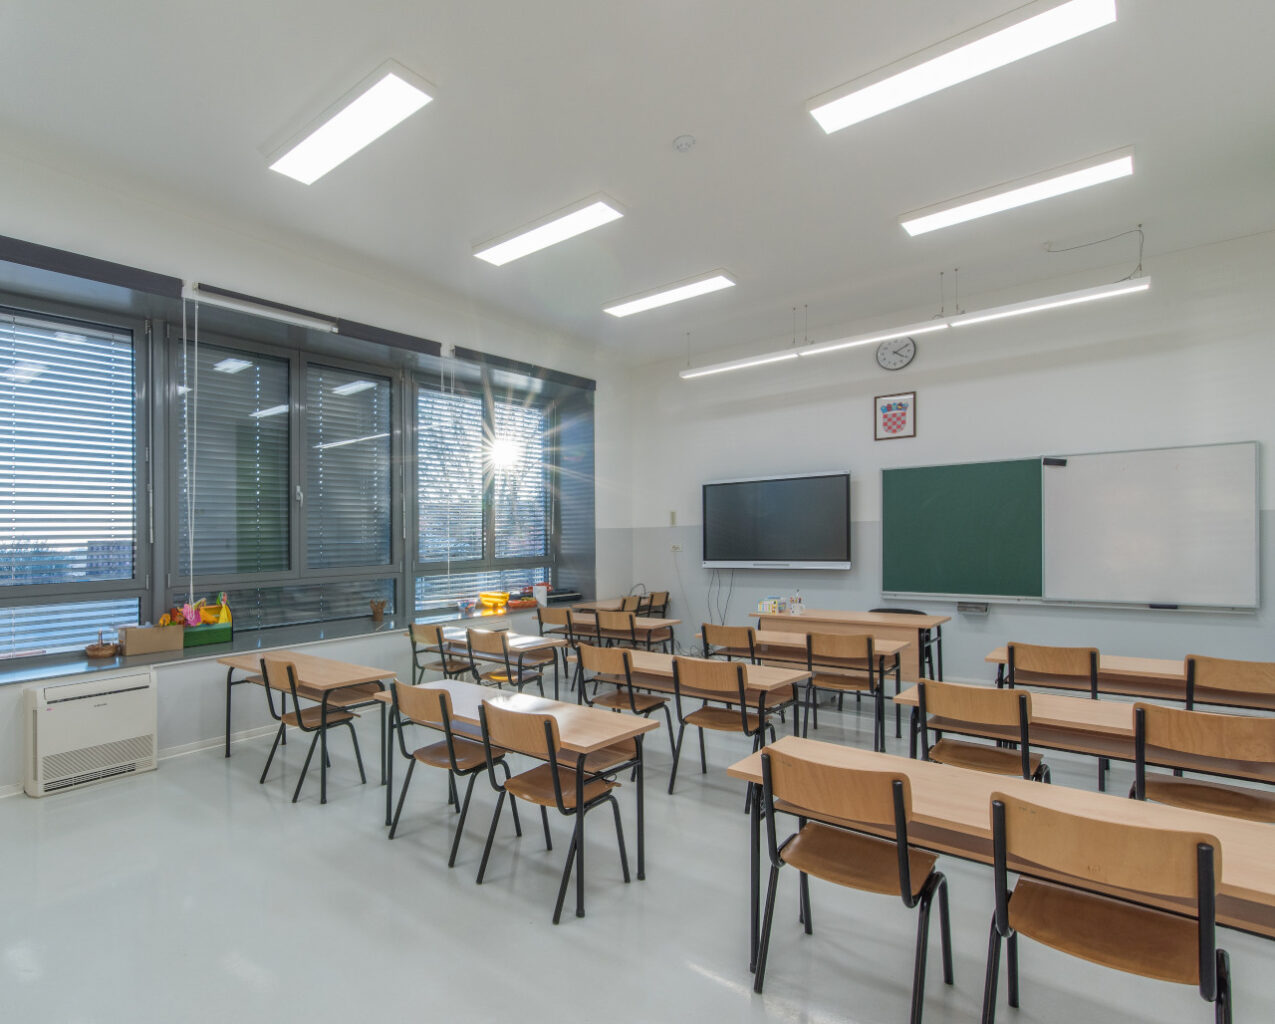 Intab - ovjesna LED svjetiljka u učionici